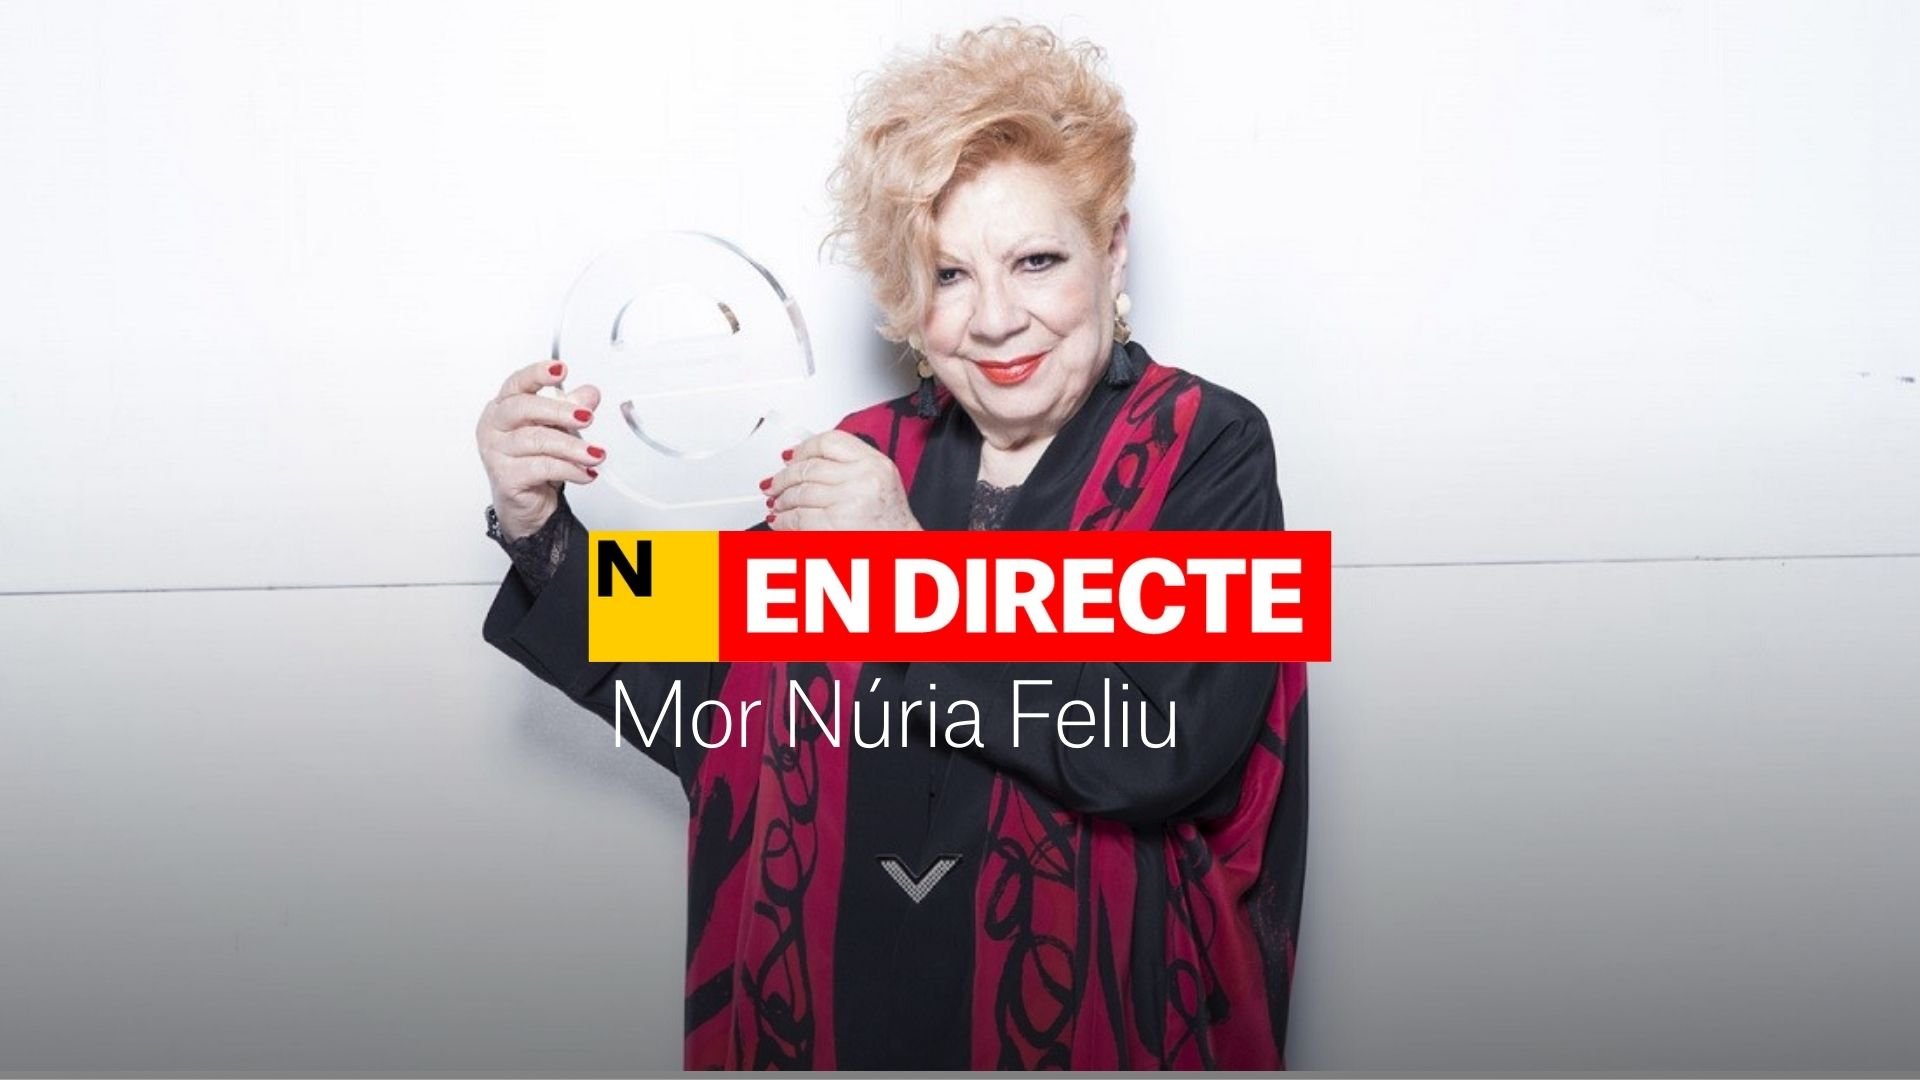 Muere Núria Feliu, DIRECTO | Catalunya se despide de la cantante